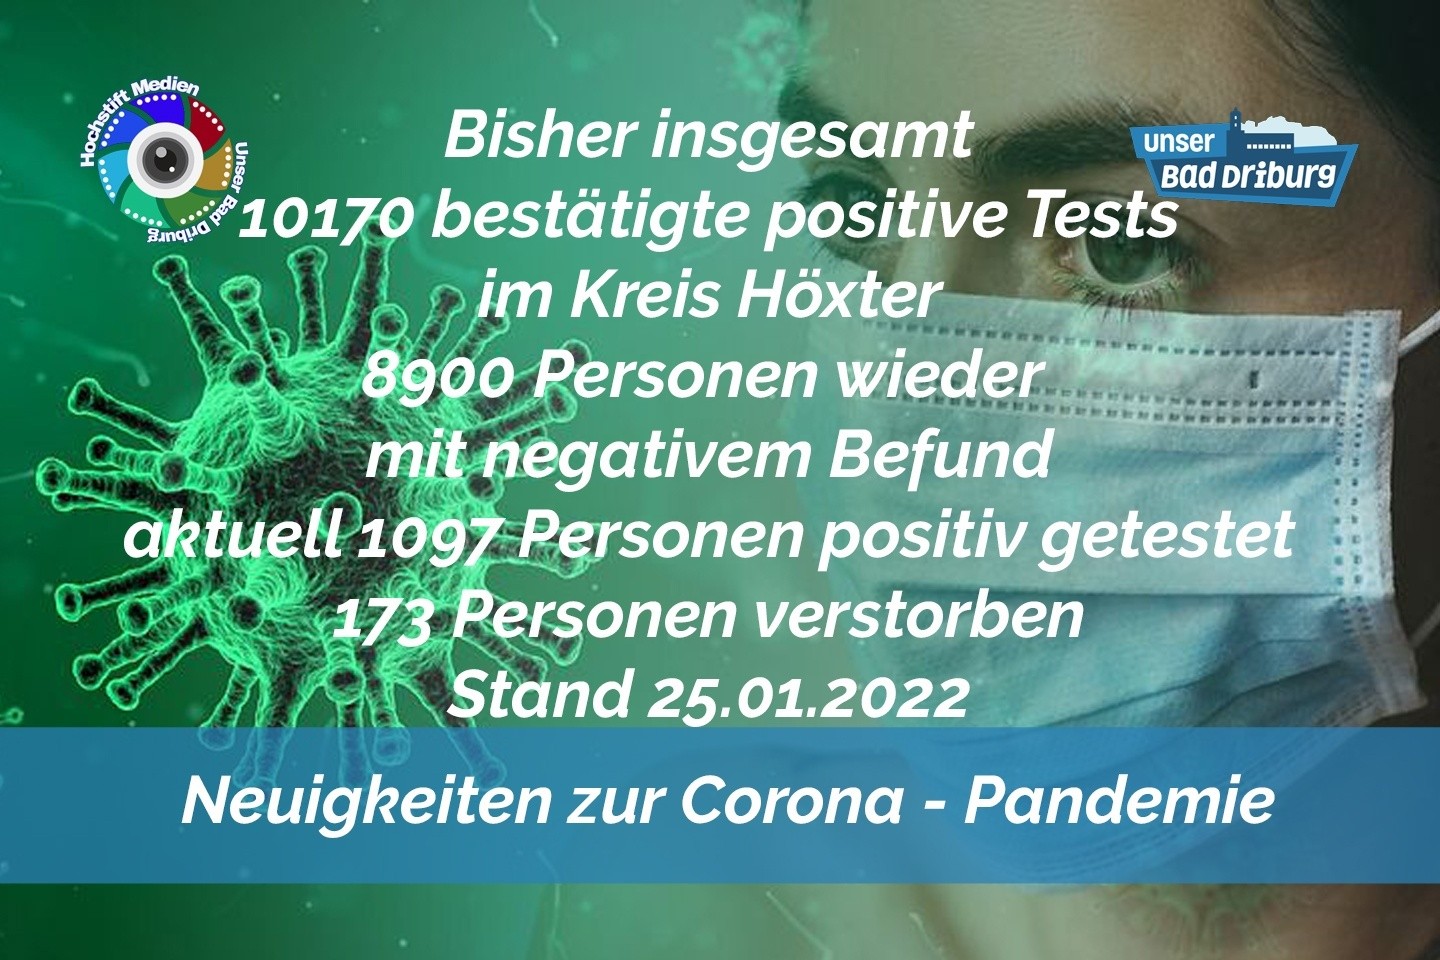 Update 25. Januar 2022: 255 weitere amtlich positive Tests im Kreis Höxter